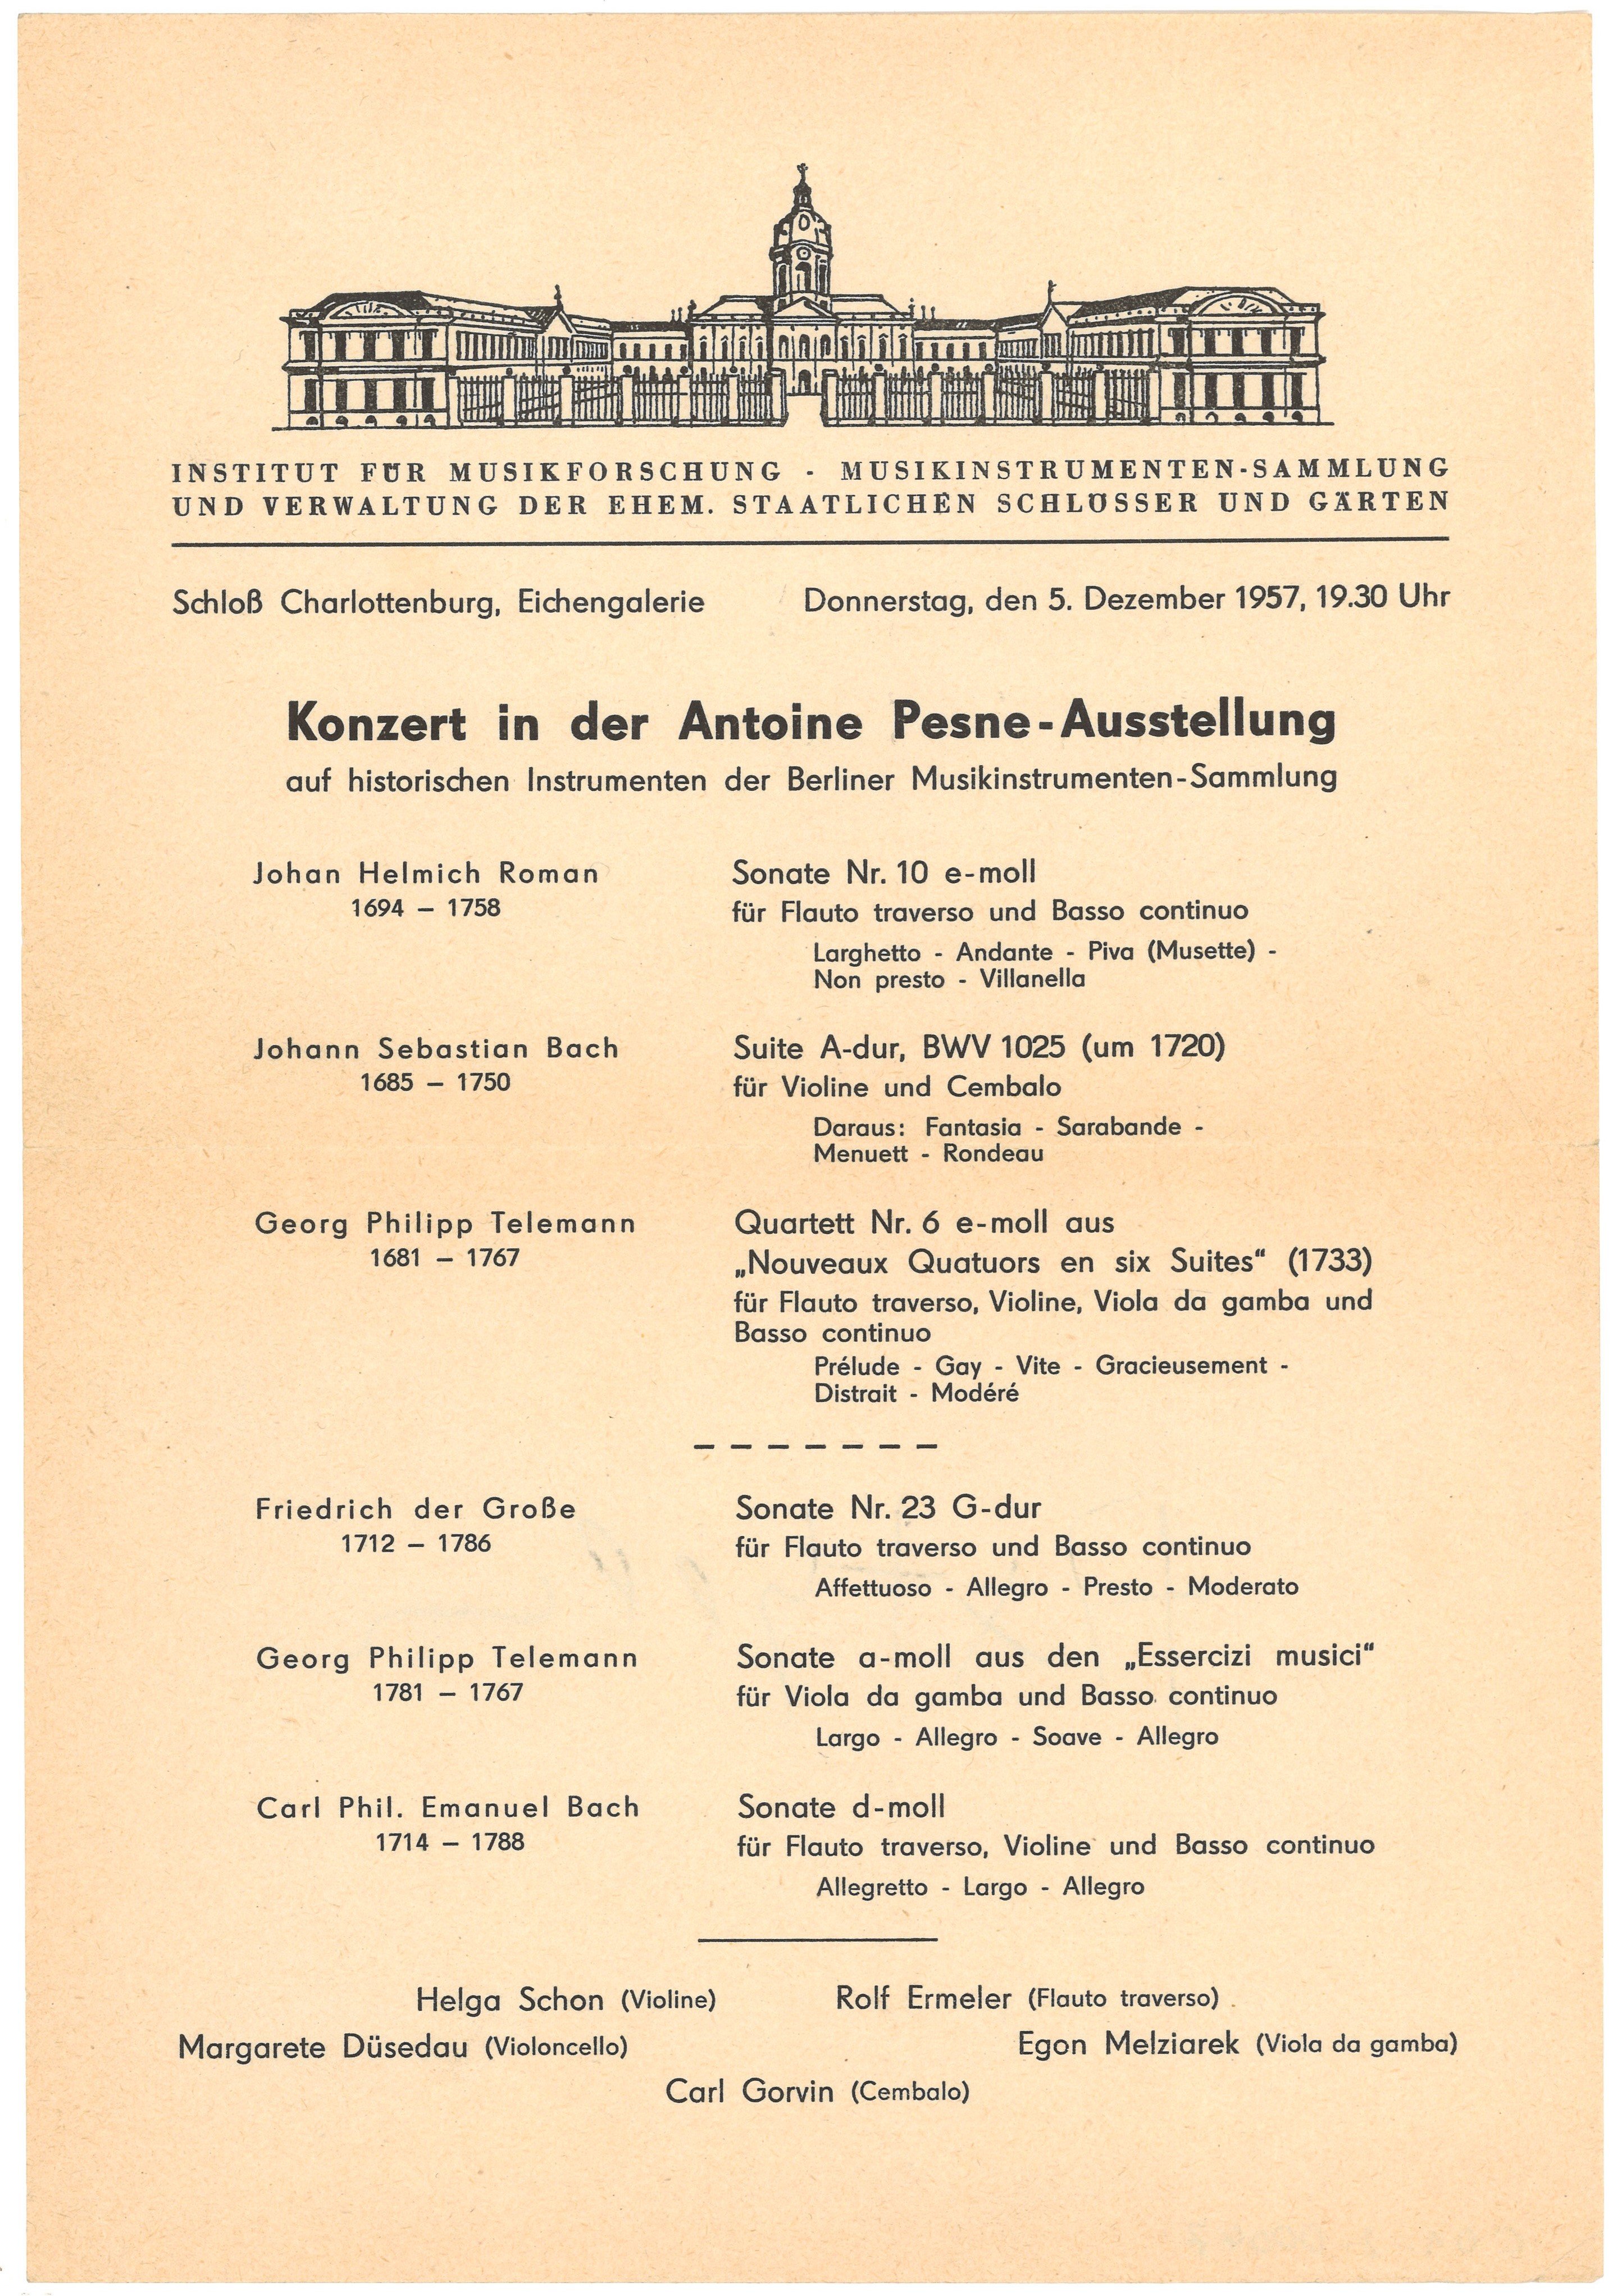 Programm für ein Konzert in der Antoine-Pesne-Ausstellung in Berlin-Charlottenburg 1957 (Landesgeschichtliche Vereinigung für die Mark Brandenburg e.V., Archiv CC BY)